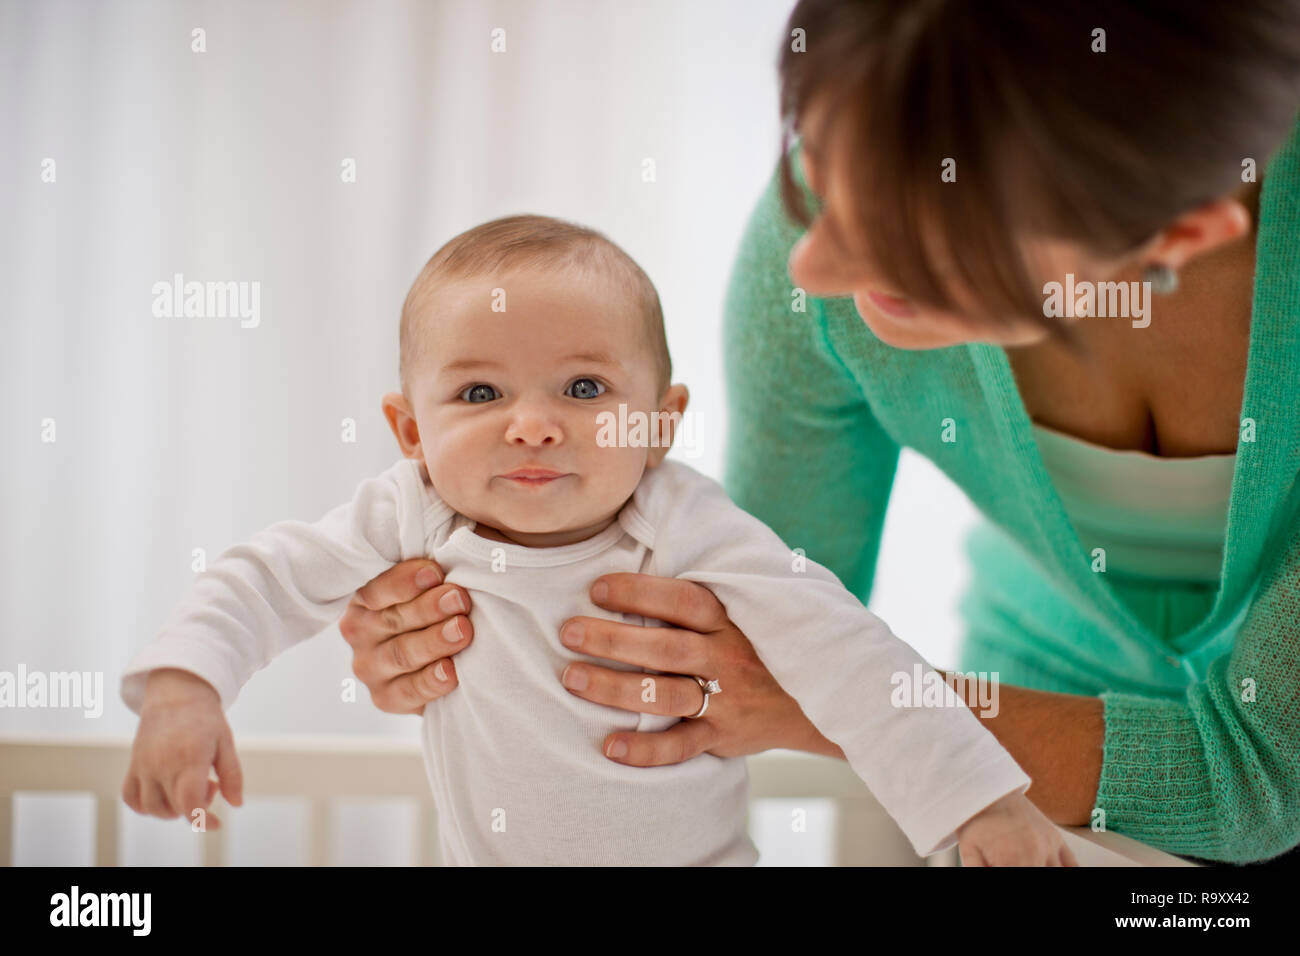 Porträt eines lächelnden baby boy von den Händen seiner Mutter unterstützt werden, als sie ihm hilft, sich in seinem Kinderbett stehen. Stockfoto